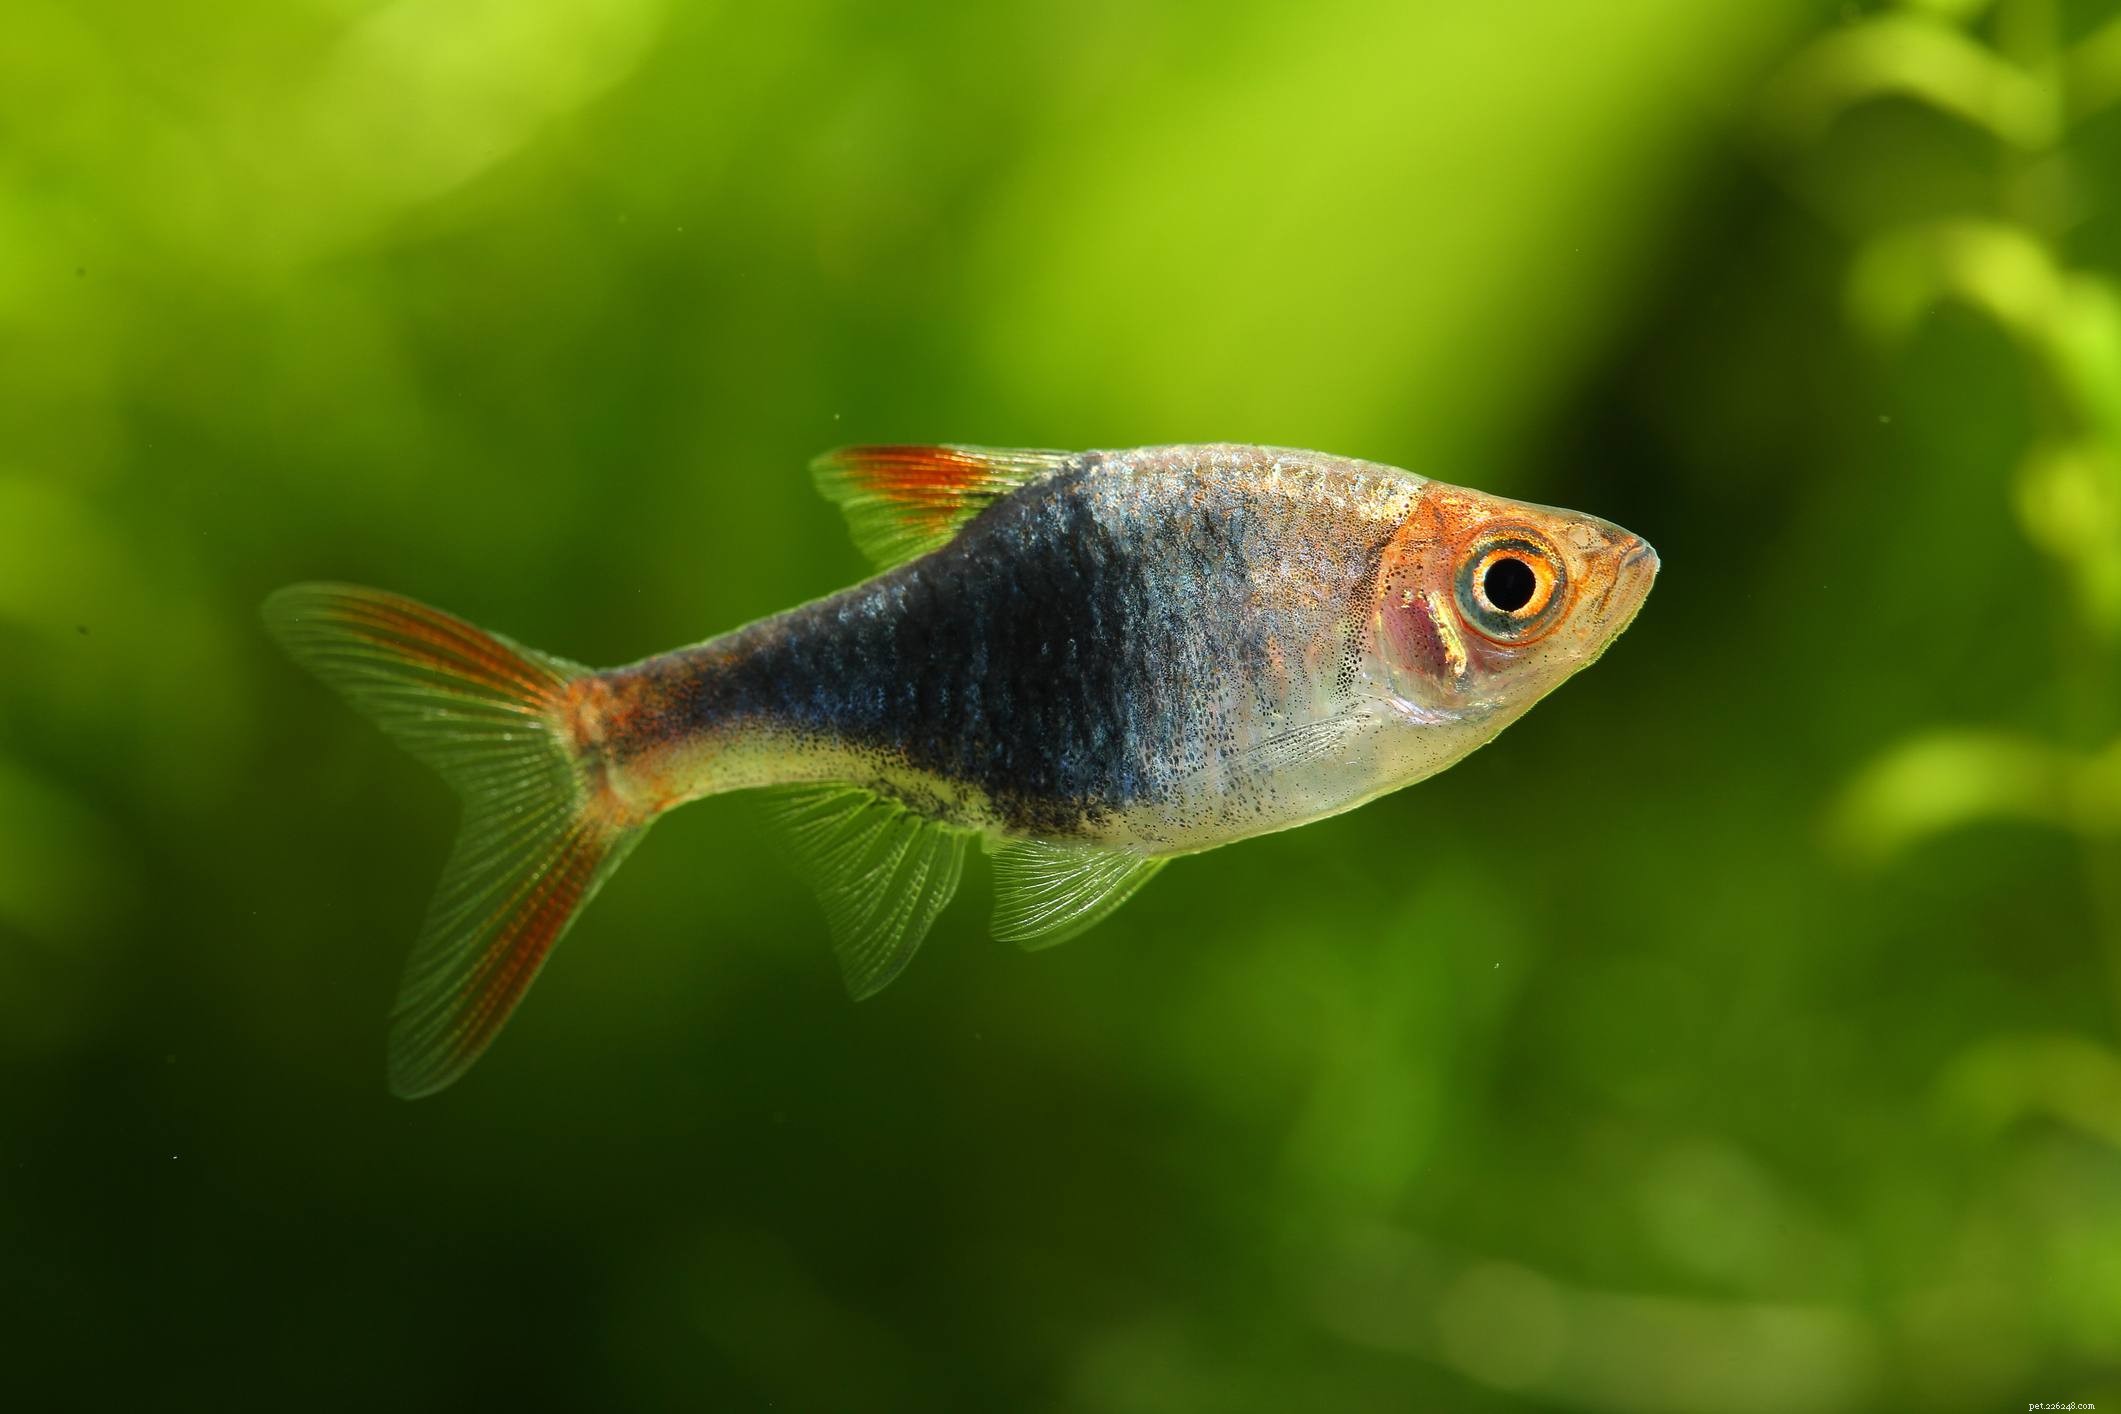 Полезный список видов аквариумных рыб по общему названию